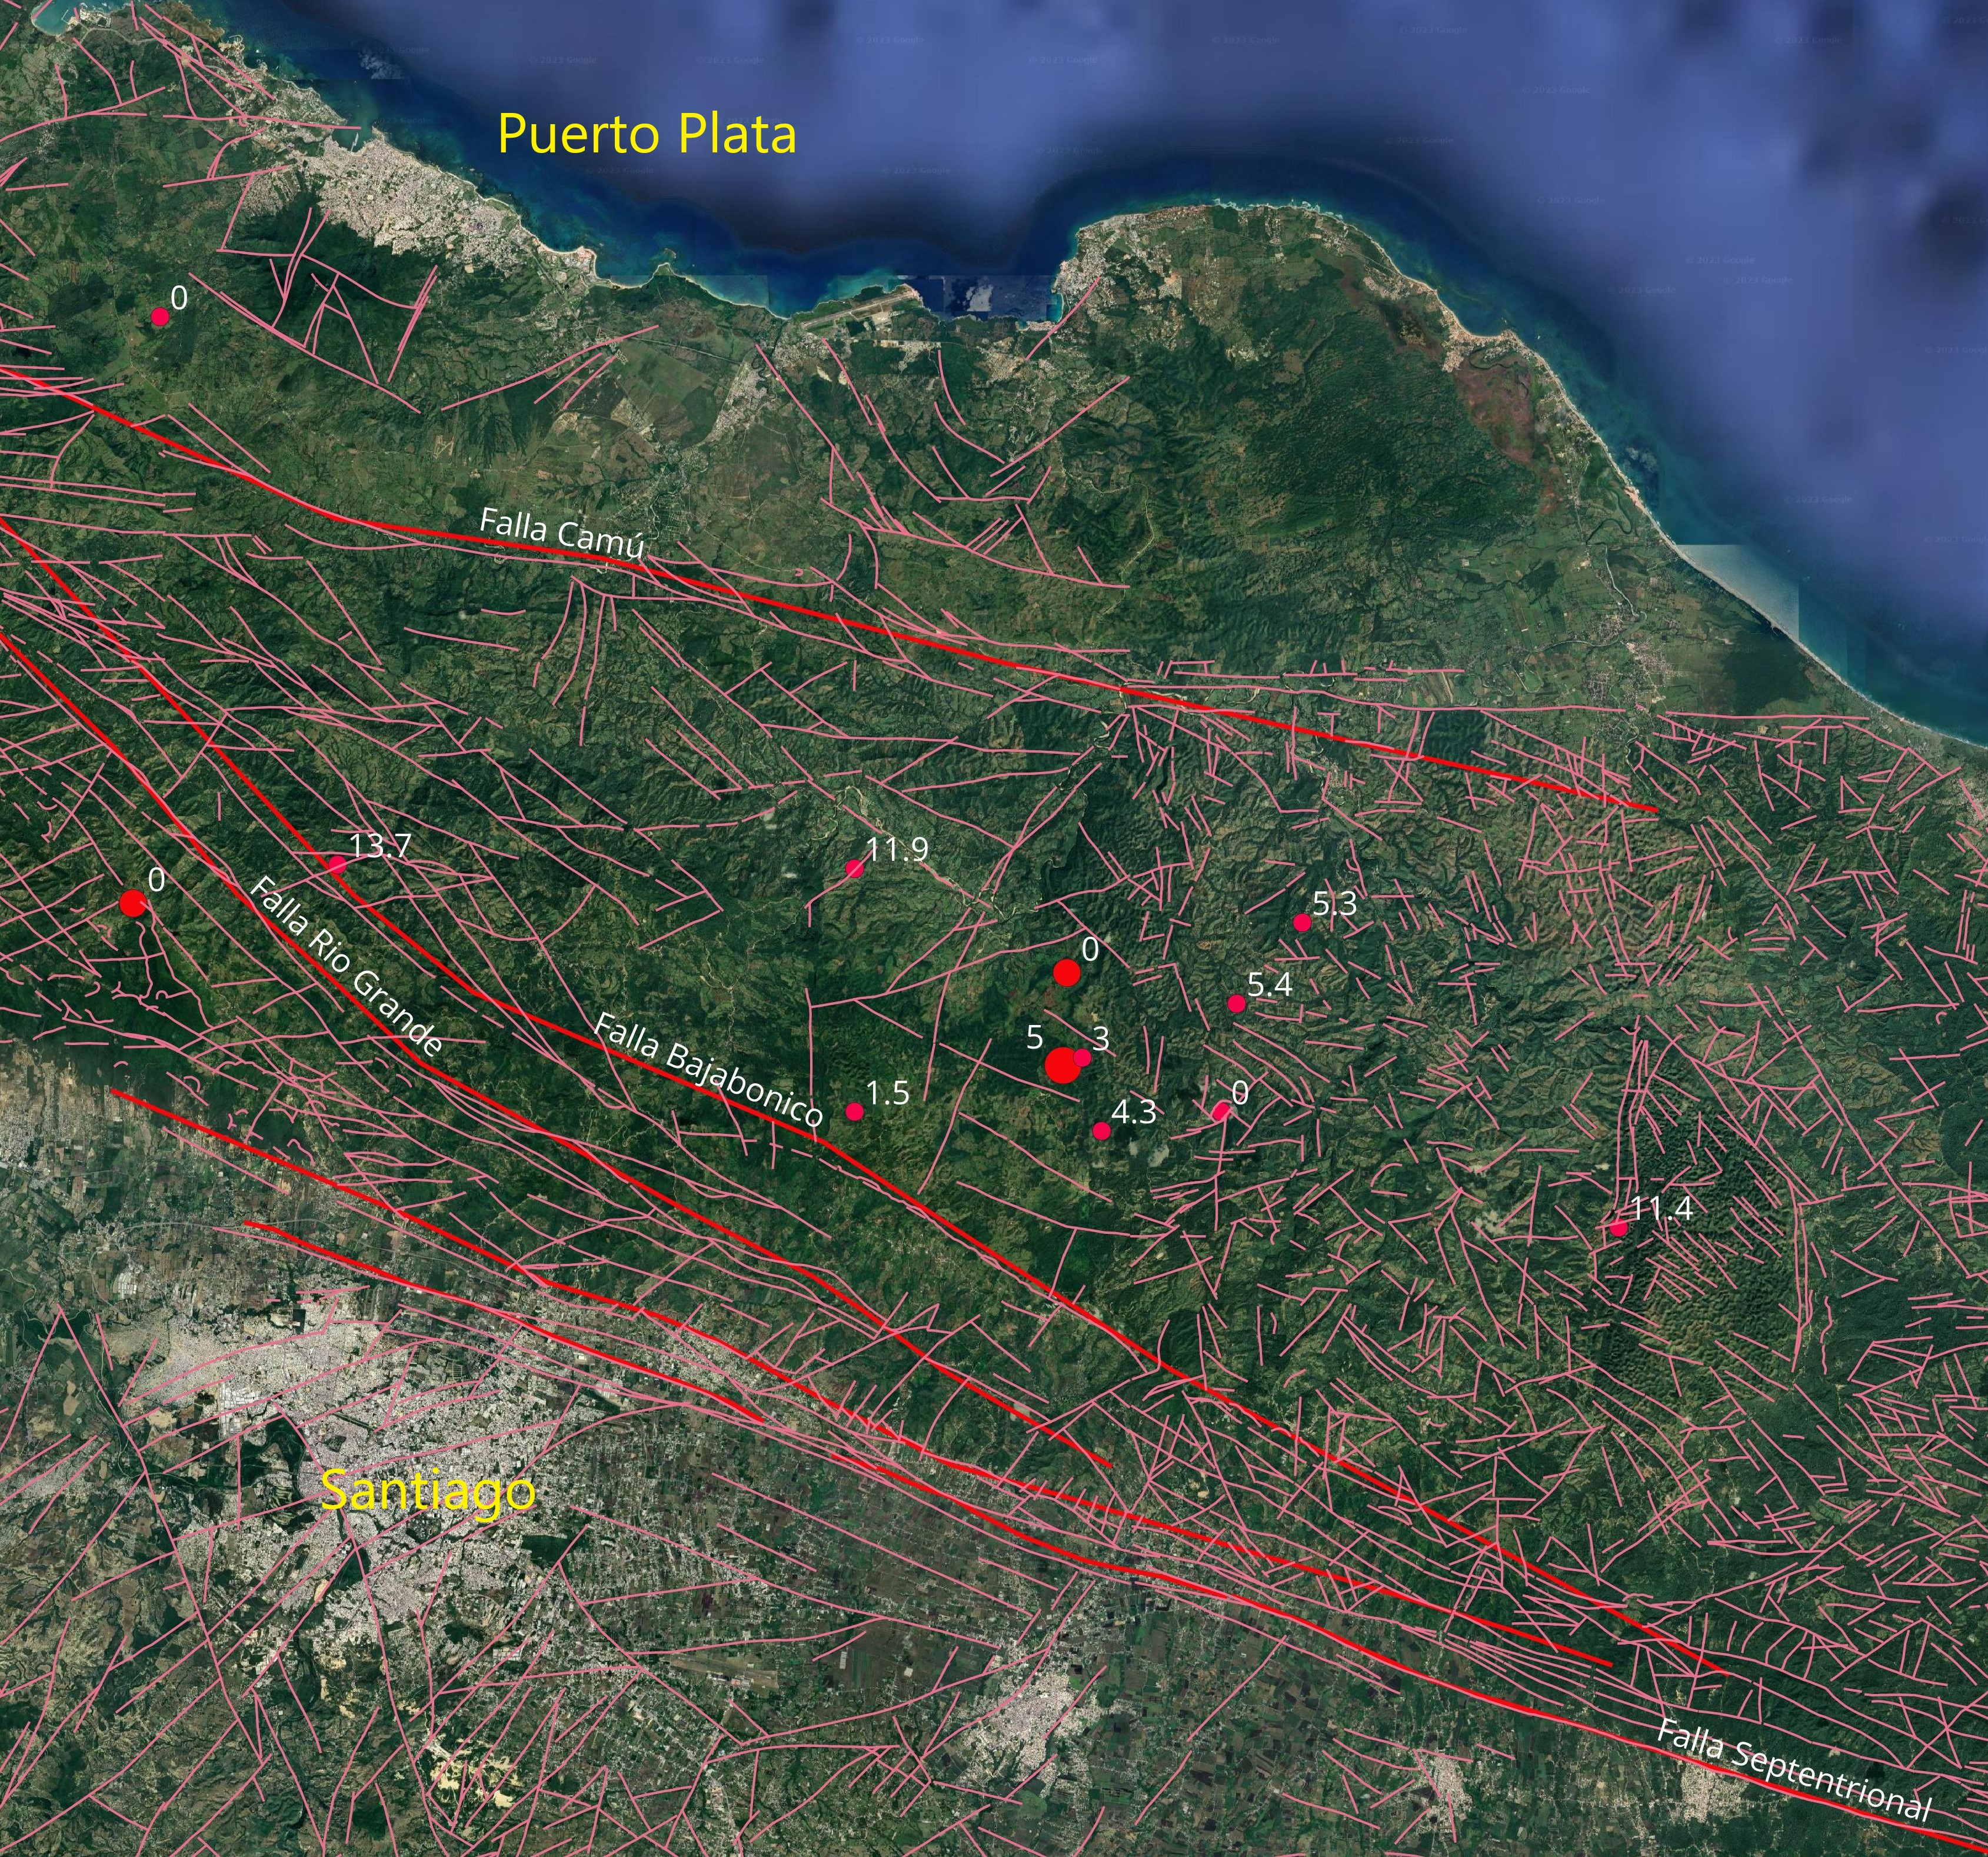 Detalle sismicidad al norte de Santiago. Se muestran los epicentros del mes y sus profundidades en km. Los lineamientos en color rosa indican fallas según los mapas a escala 1:50,000 del proyecto SYSMIN del Servicio Geológico Nacional.